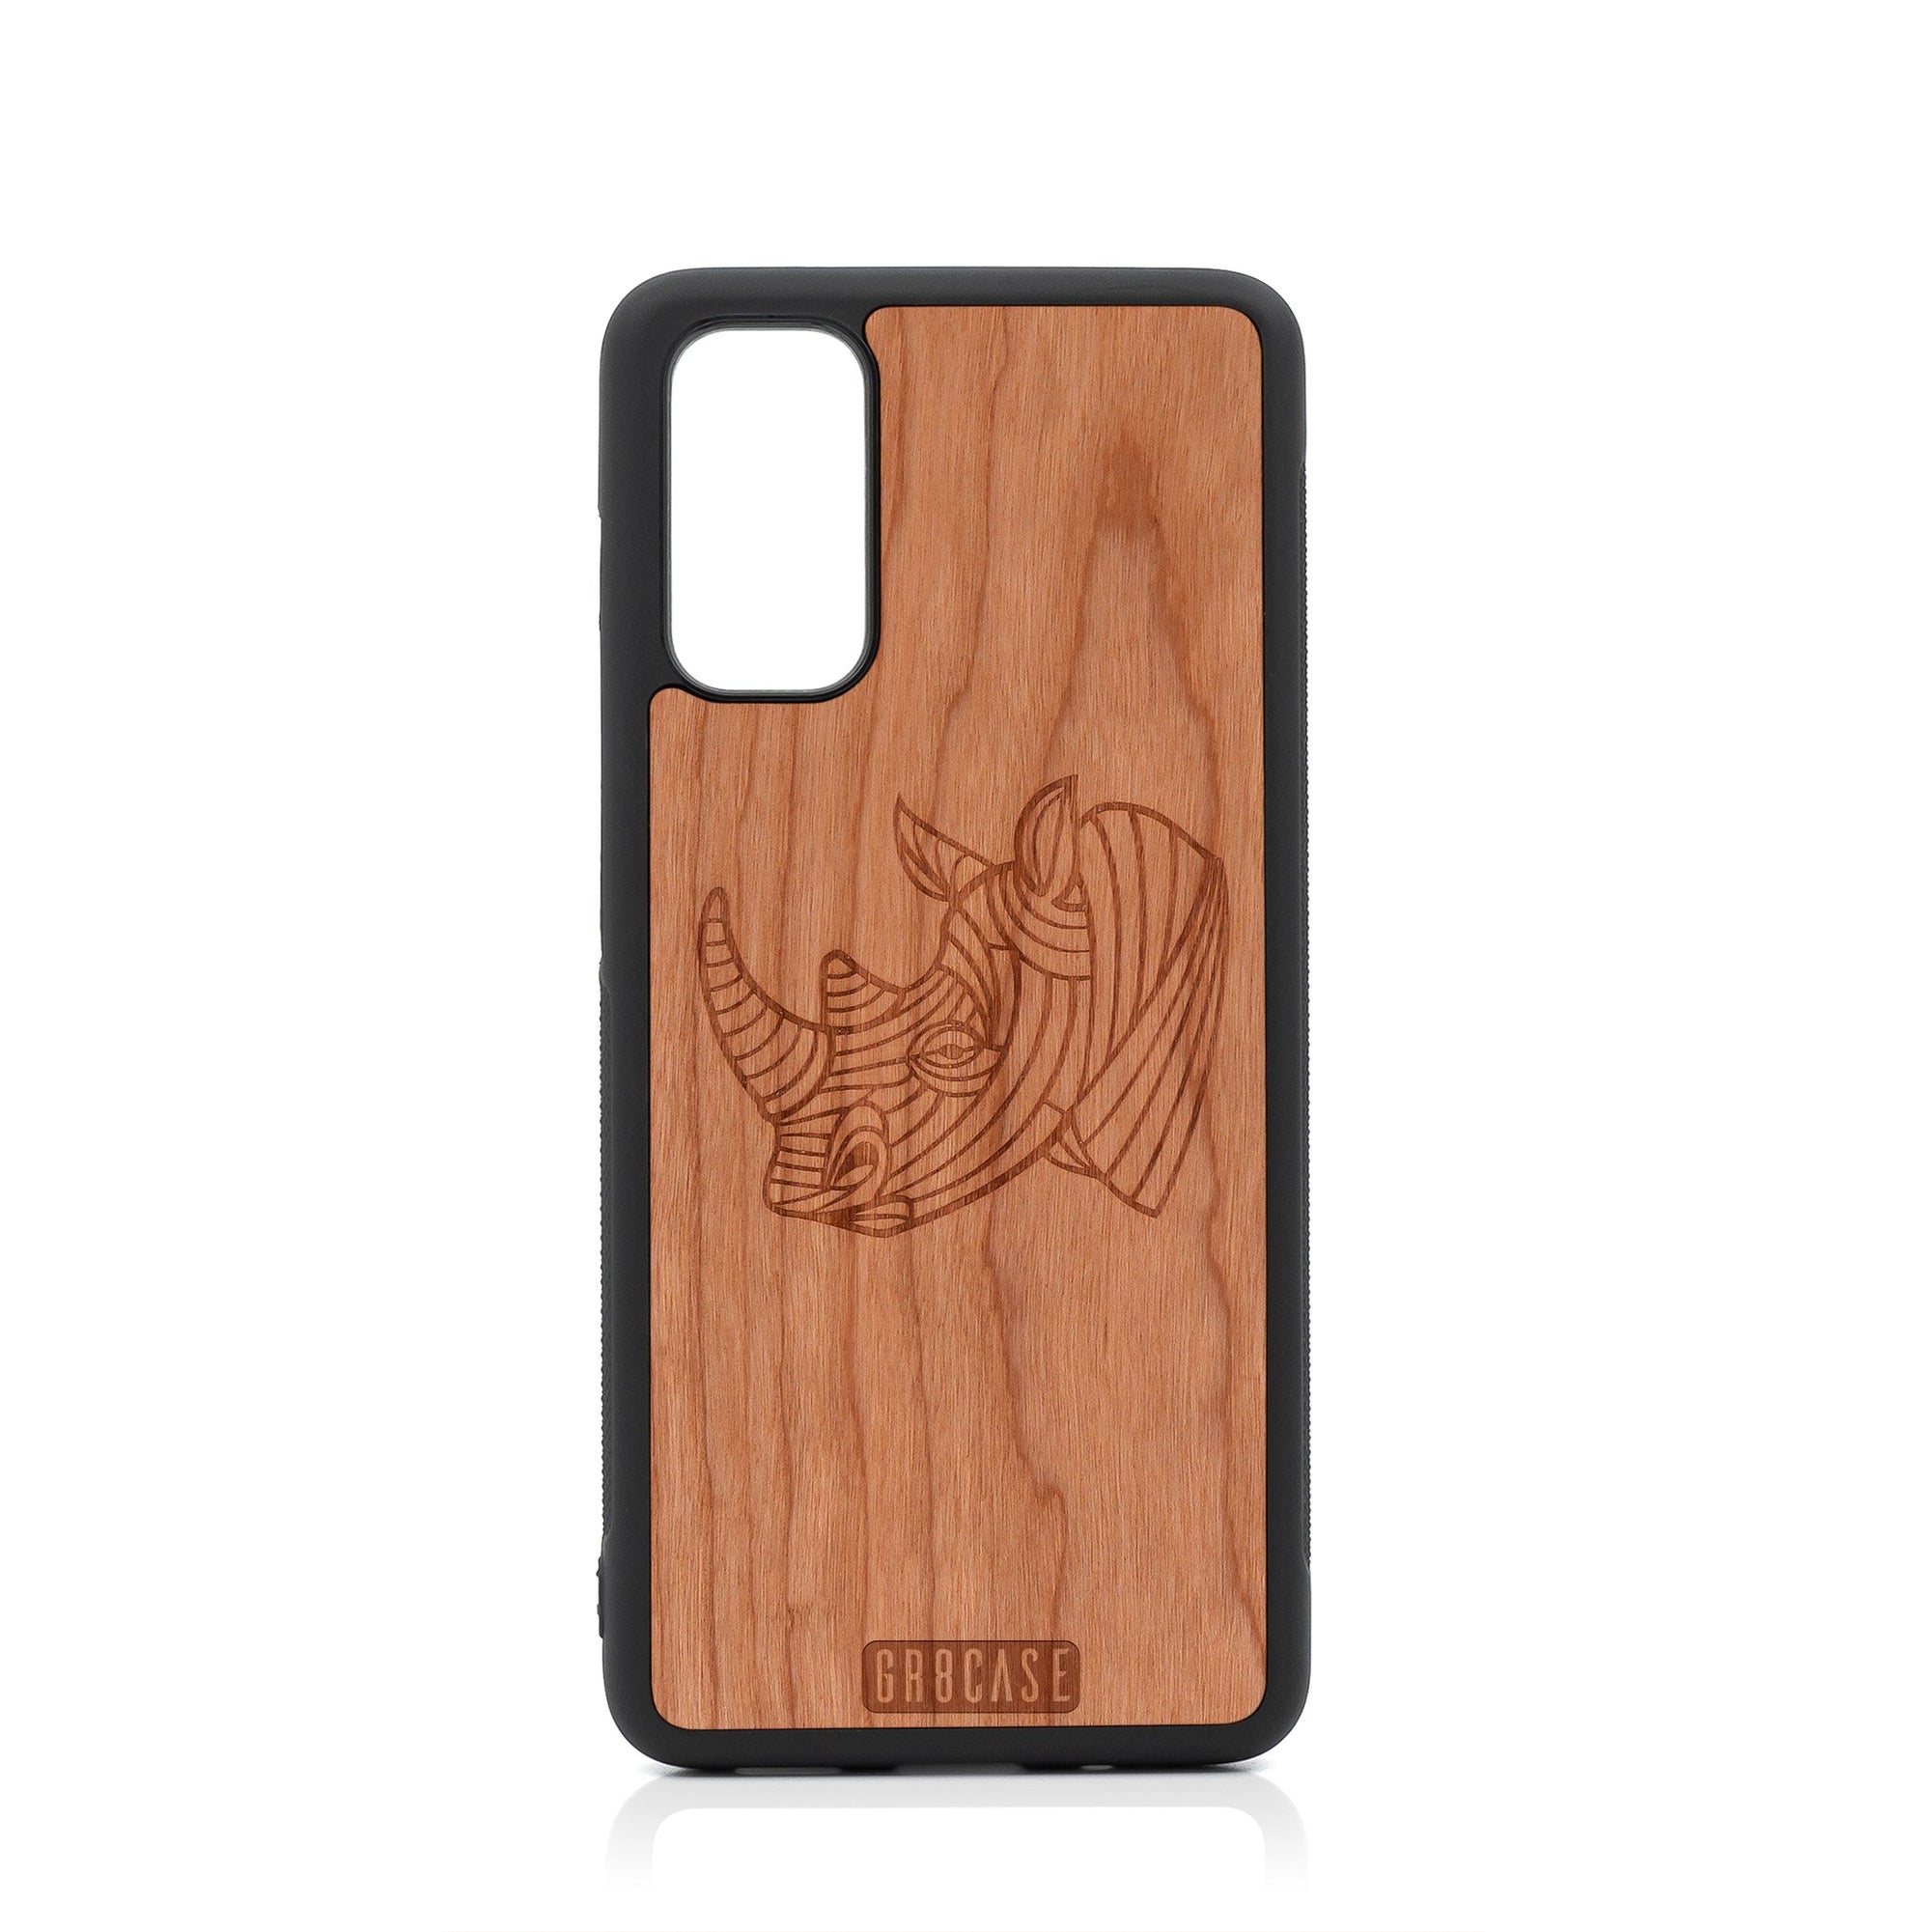 Rhino Design Wood Case For Samsung Galaxy S20 FE 5G by GR8CASE